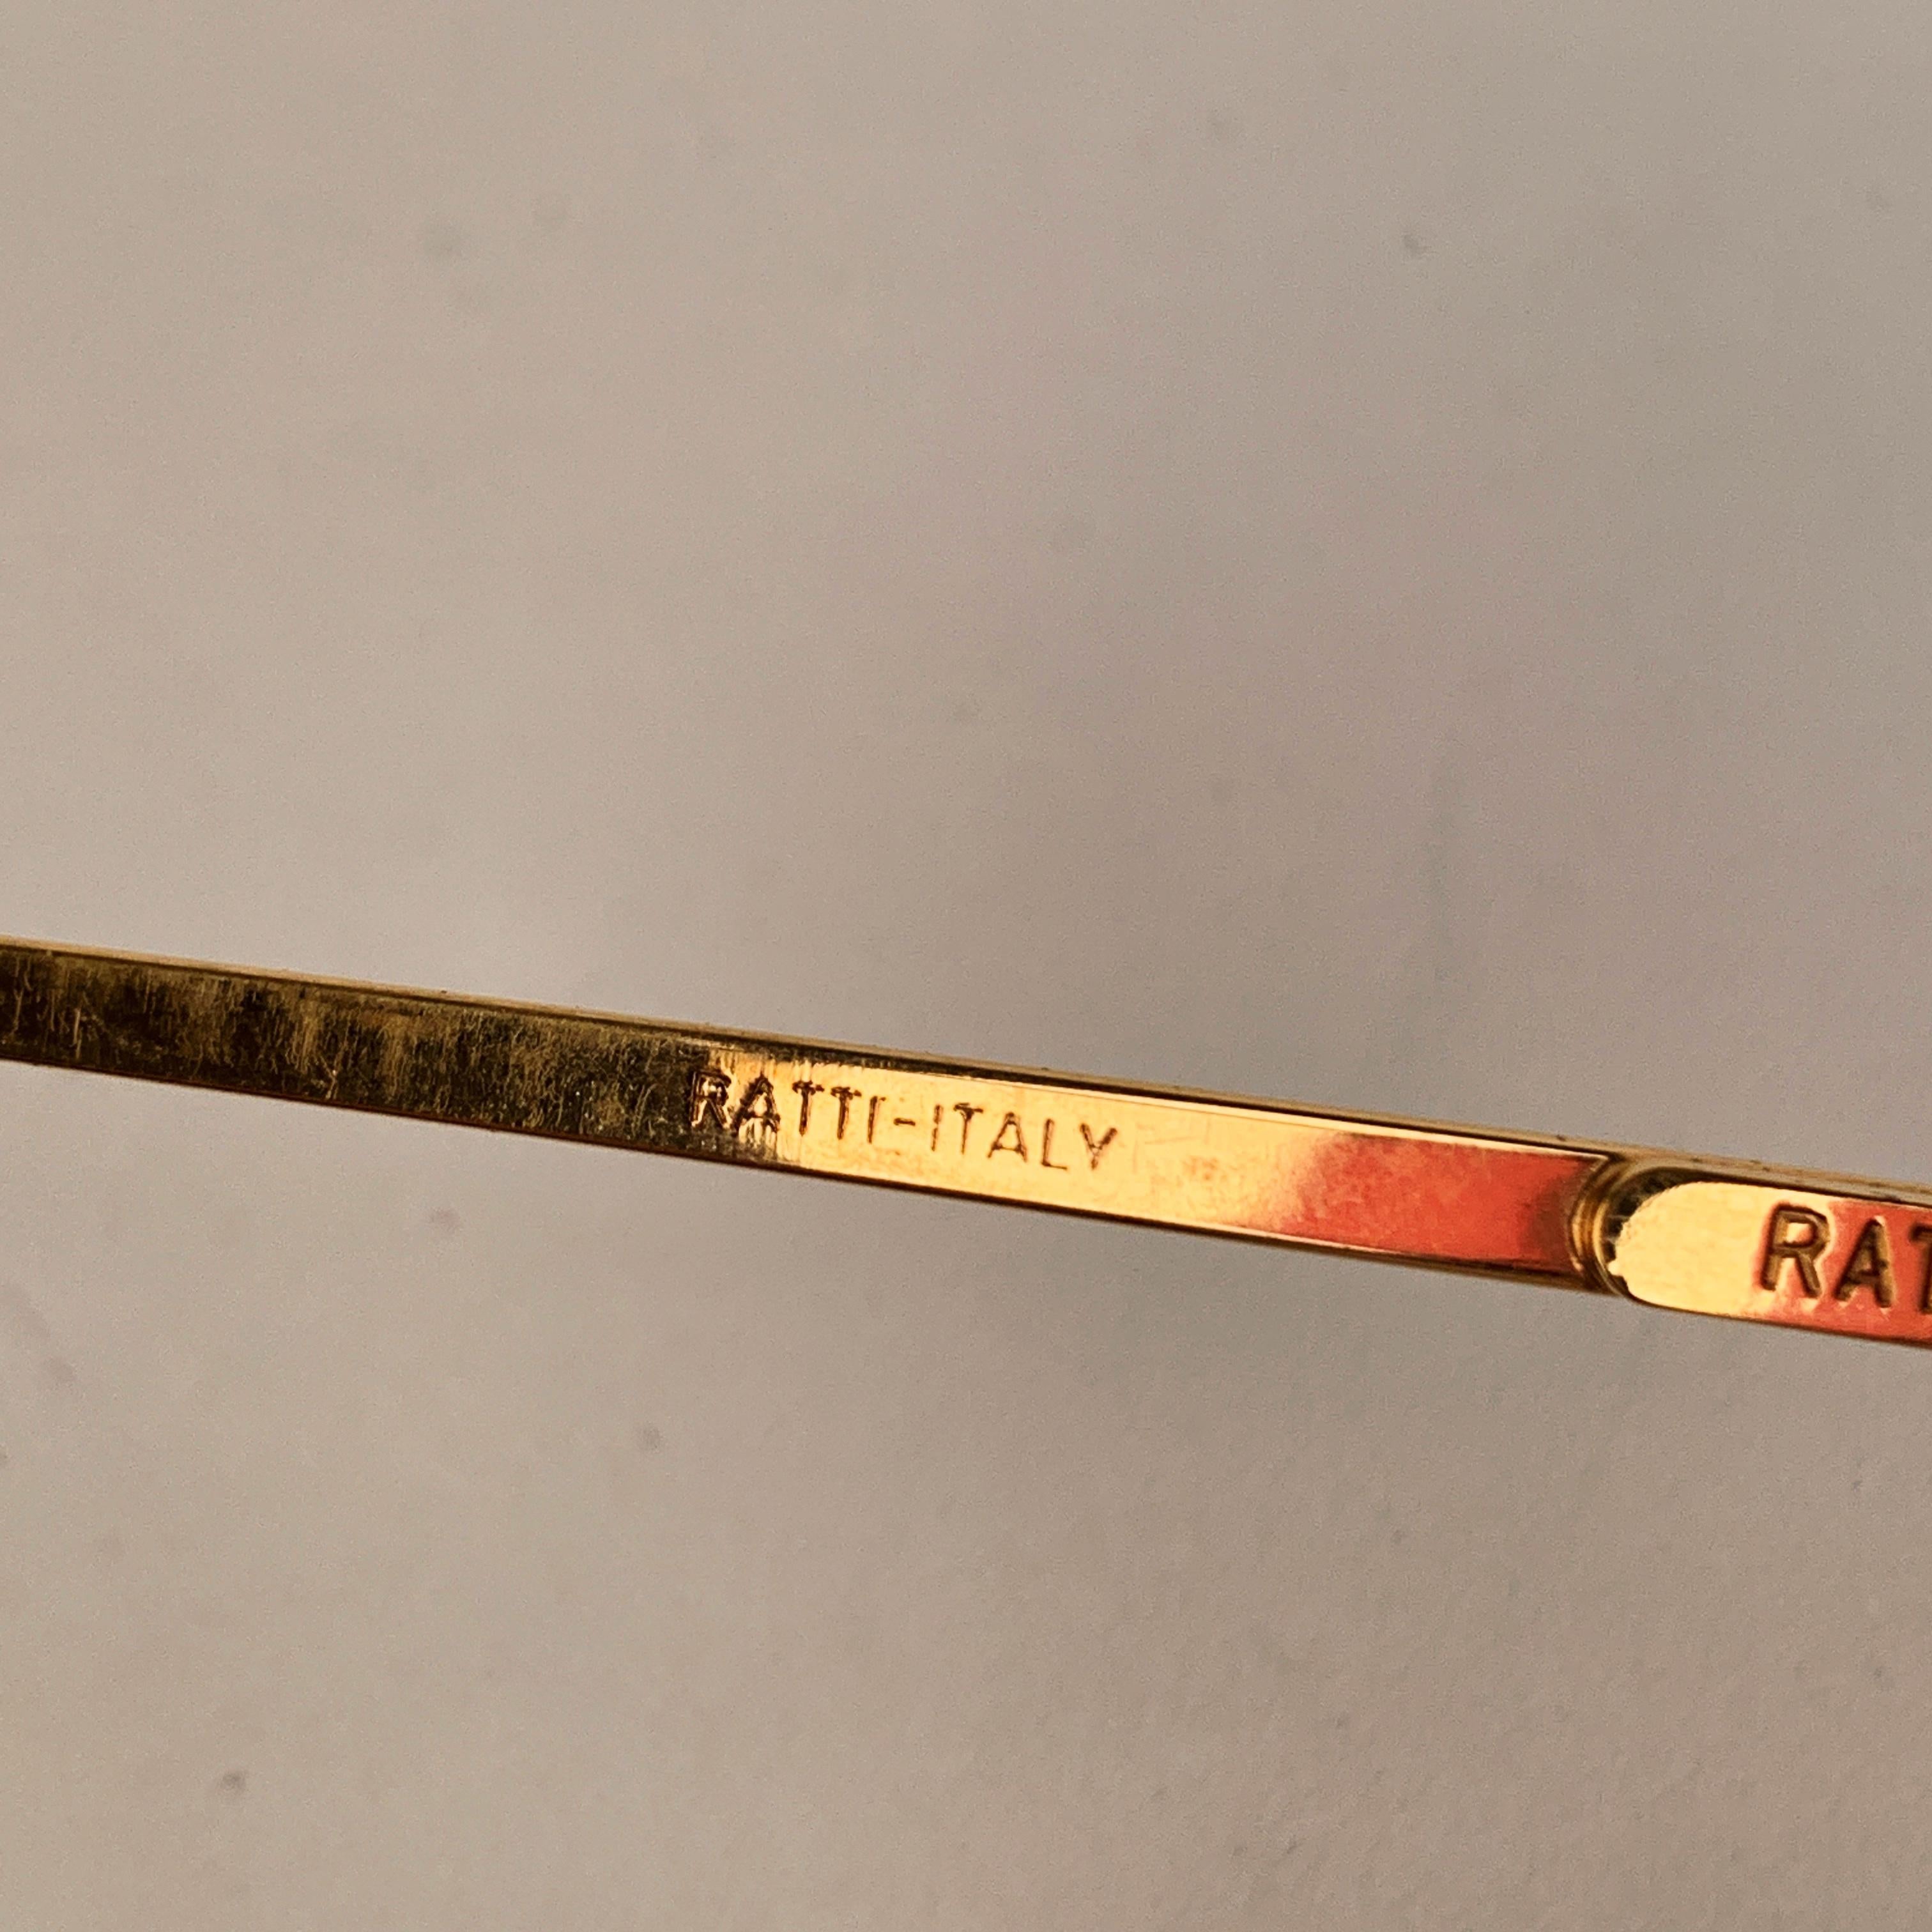 Persol Ratti Vintage Unisex Rare Flex Mint Sunglasses Mod. Alcor 5